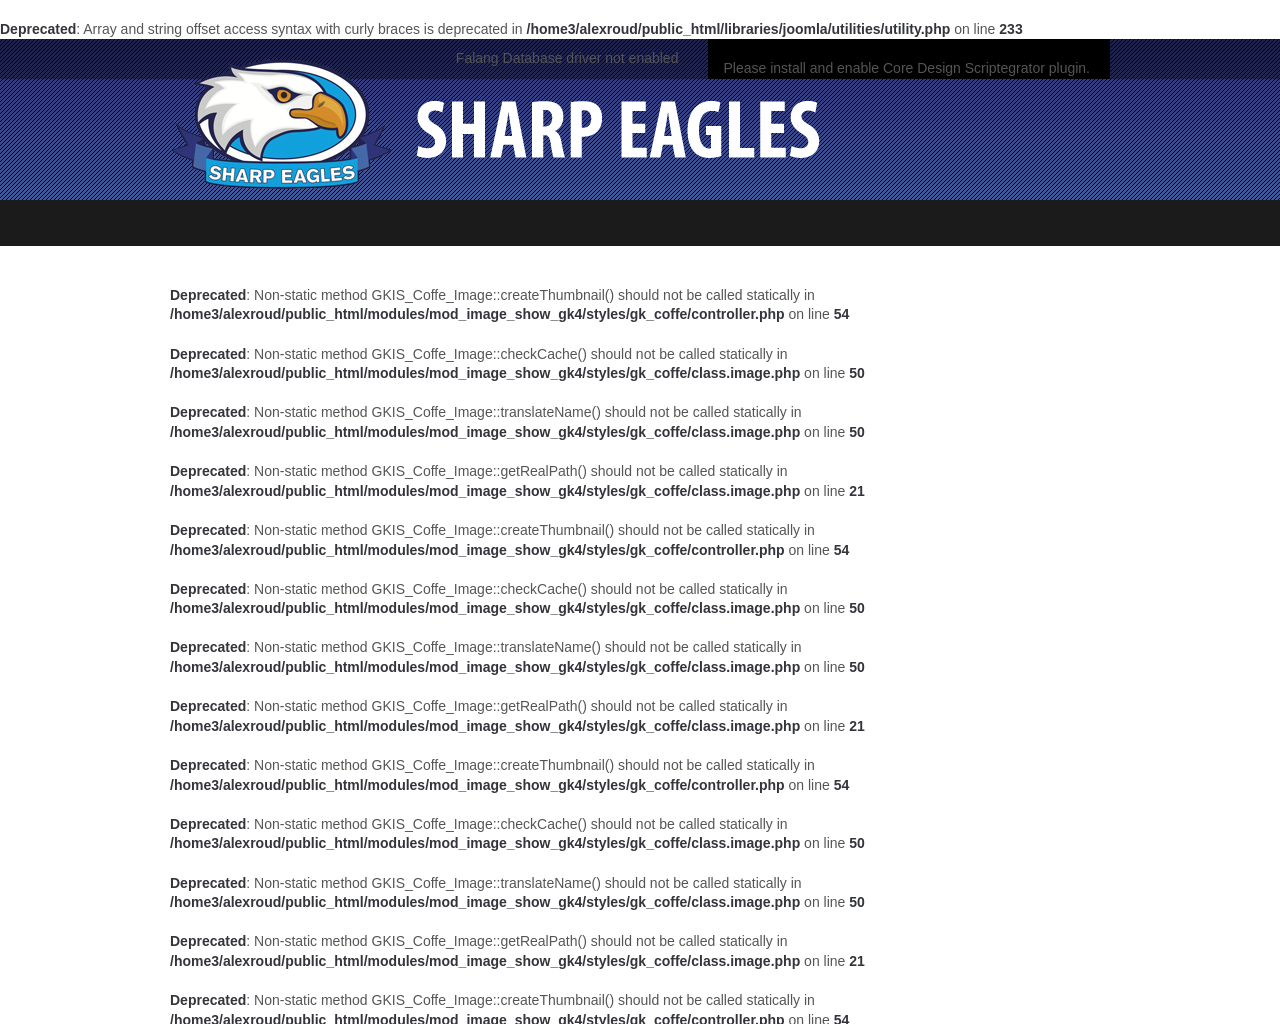 sharpeagles.com